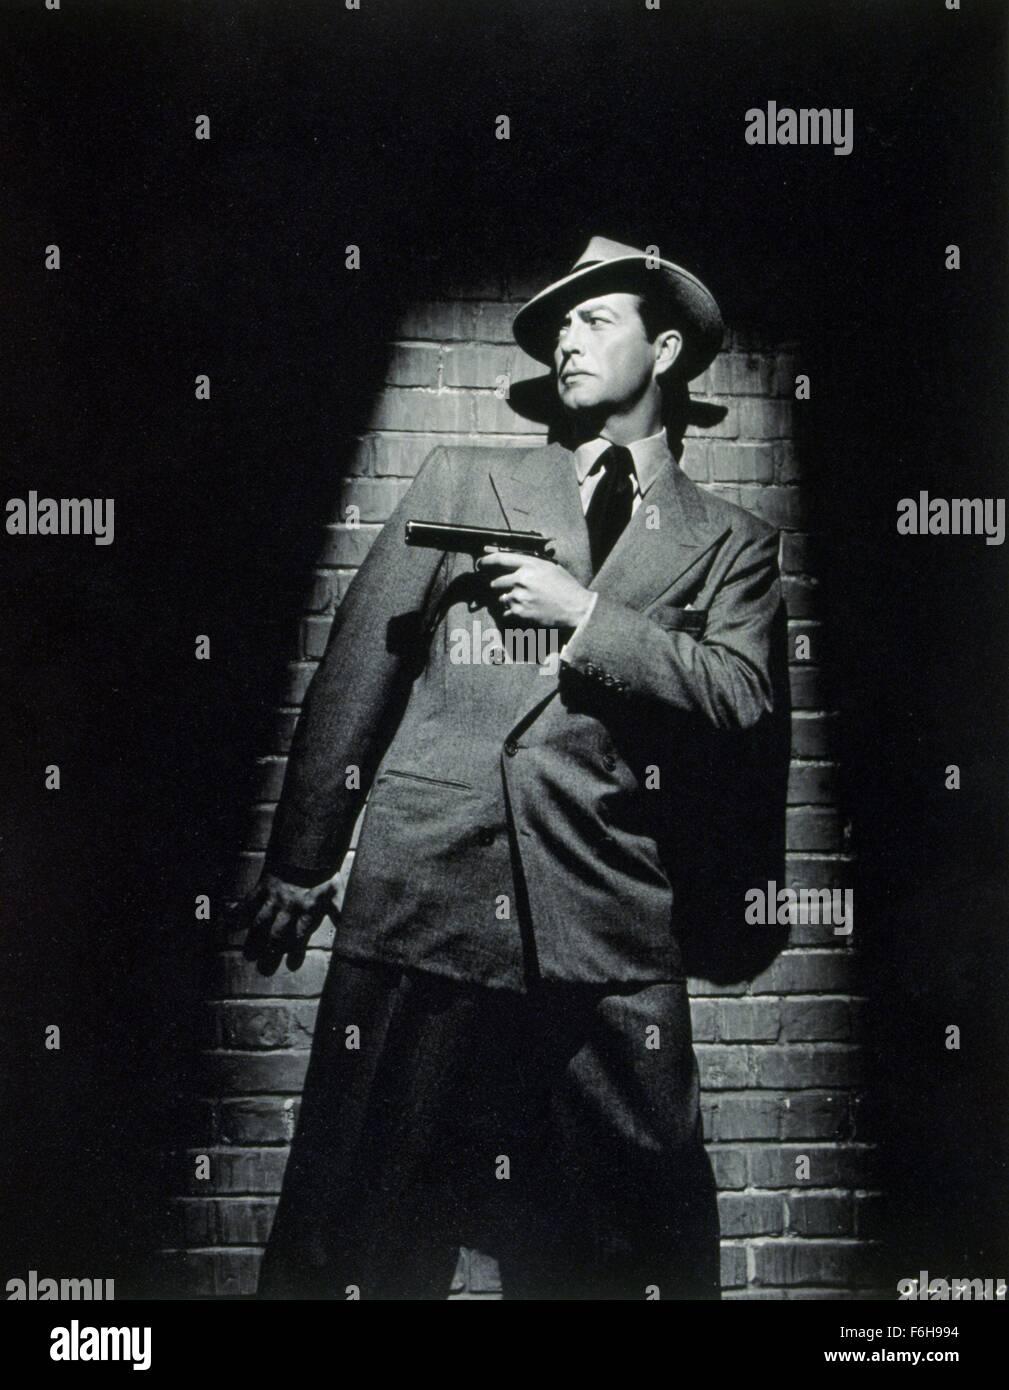 1947, il titolo del film: alto muro, Direttore: CURTIS BERNHARDT, Studio: MGM, nella foto: CURTIS BERNHARDT, Gun Crazy a pistola, ROBERT TAYLOR. (Credito Immagine: SNAP) Foto Stock